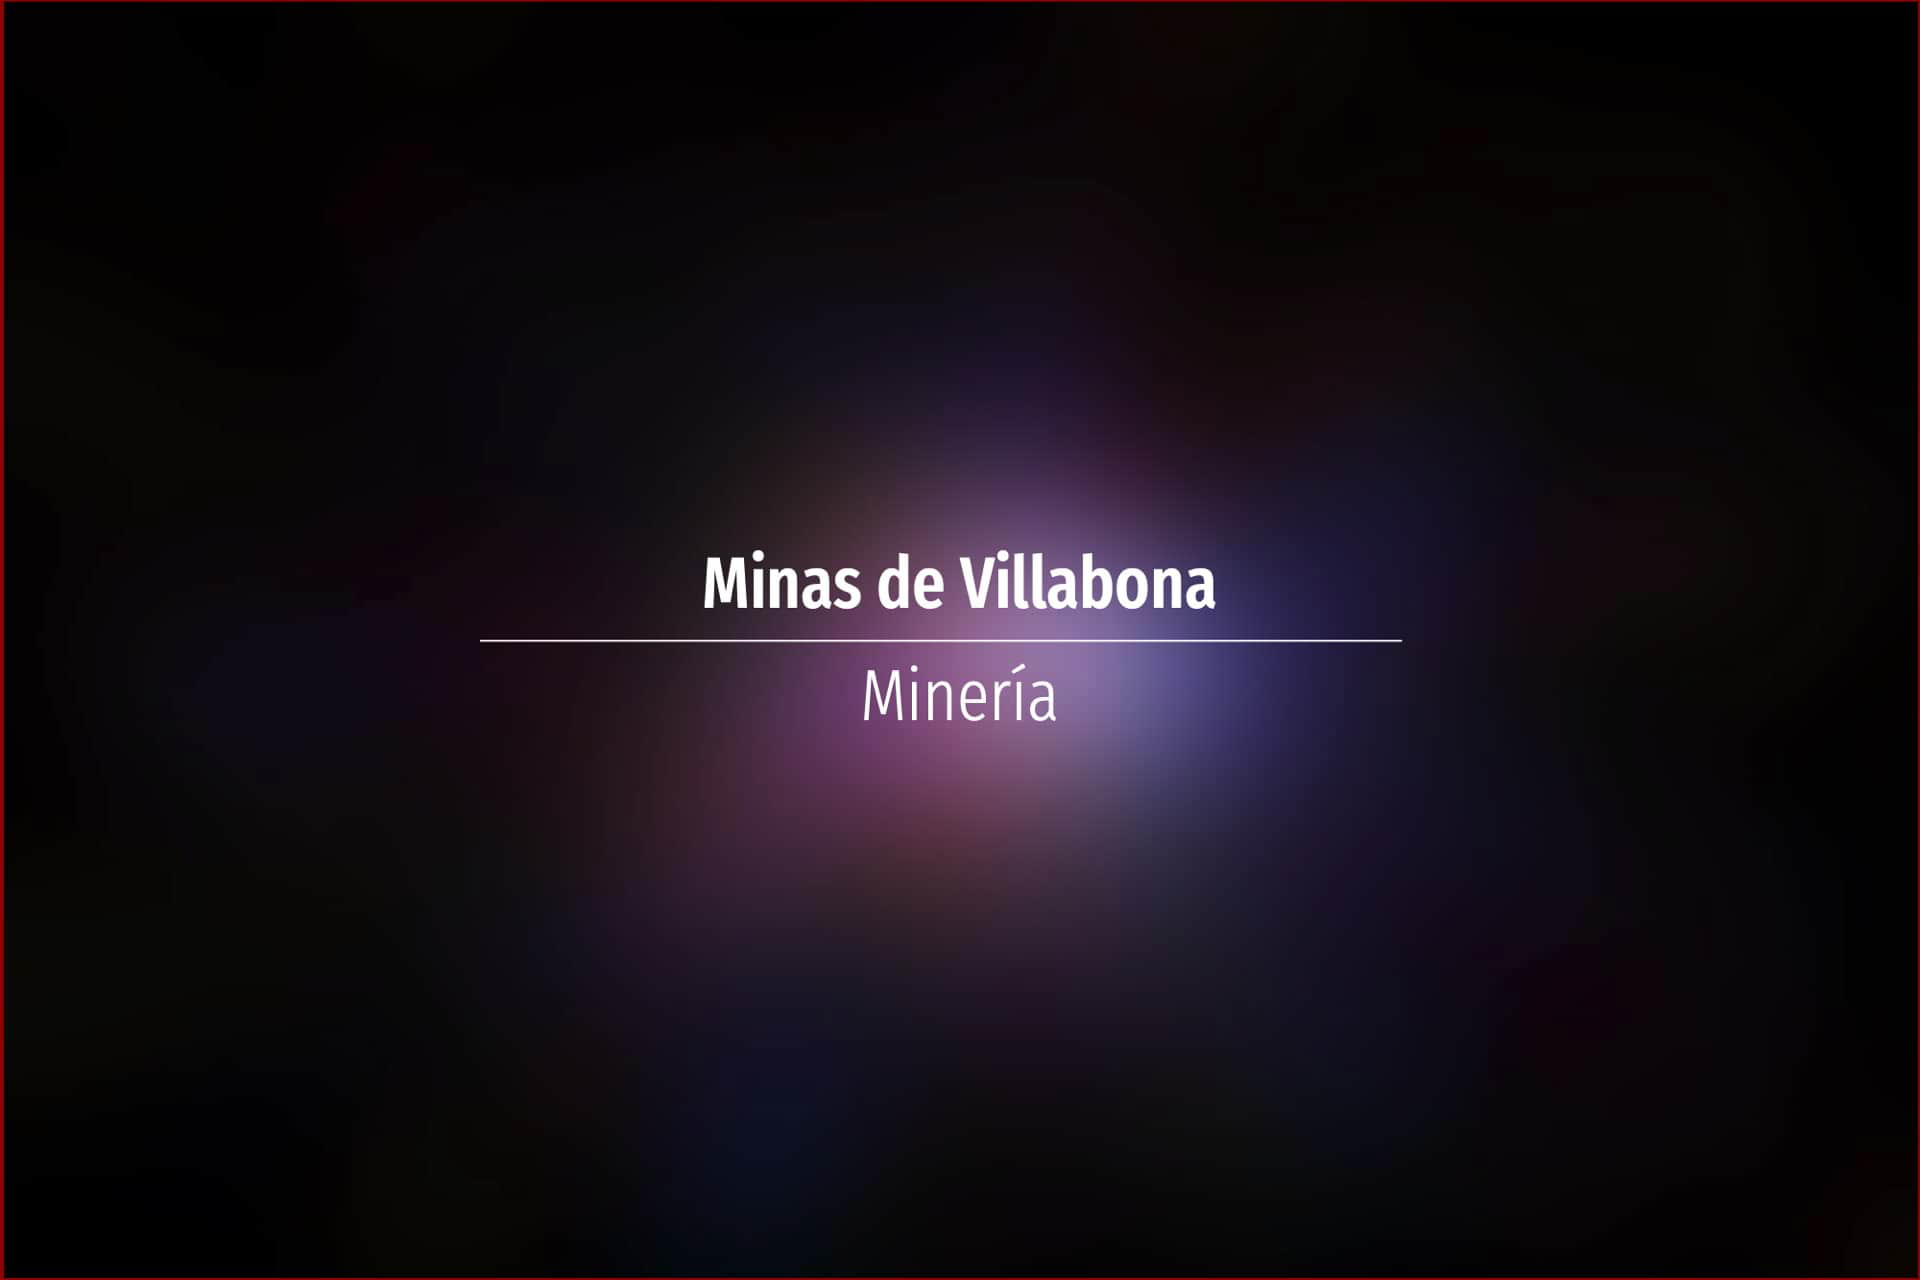 Minas de Villabona